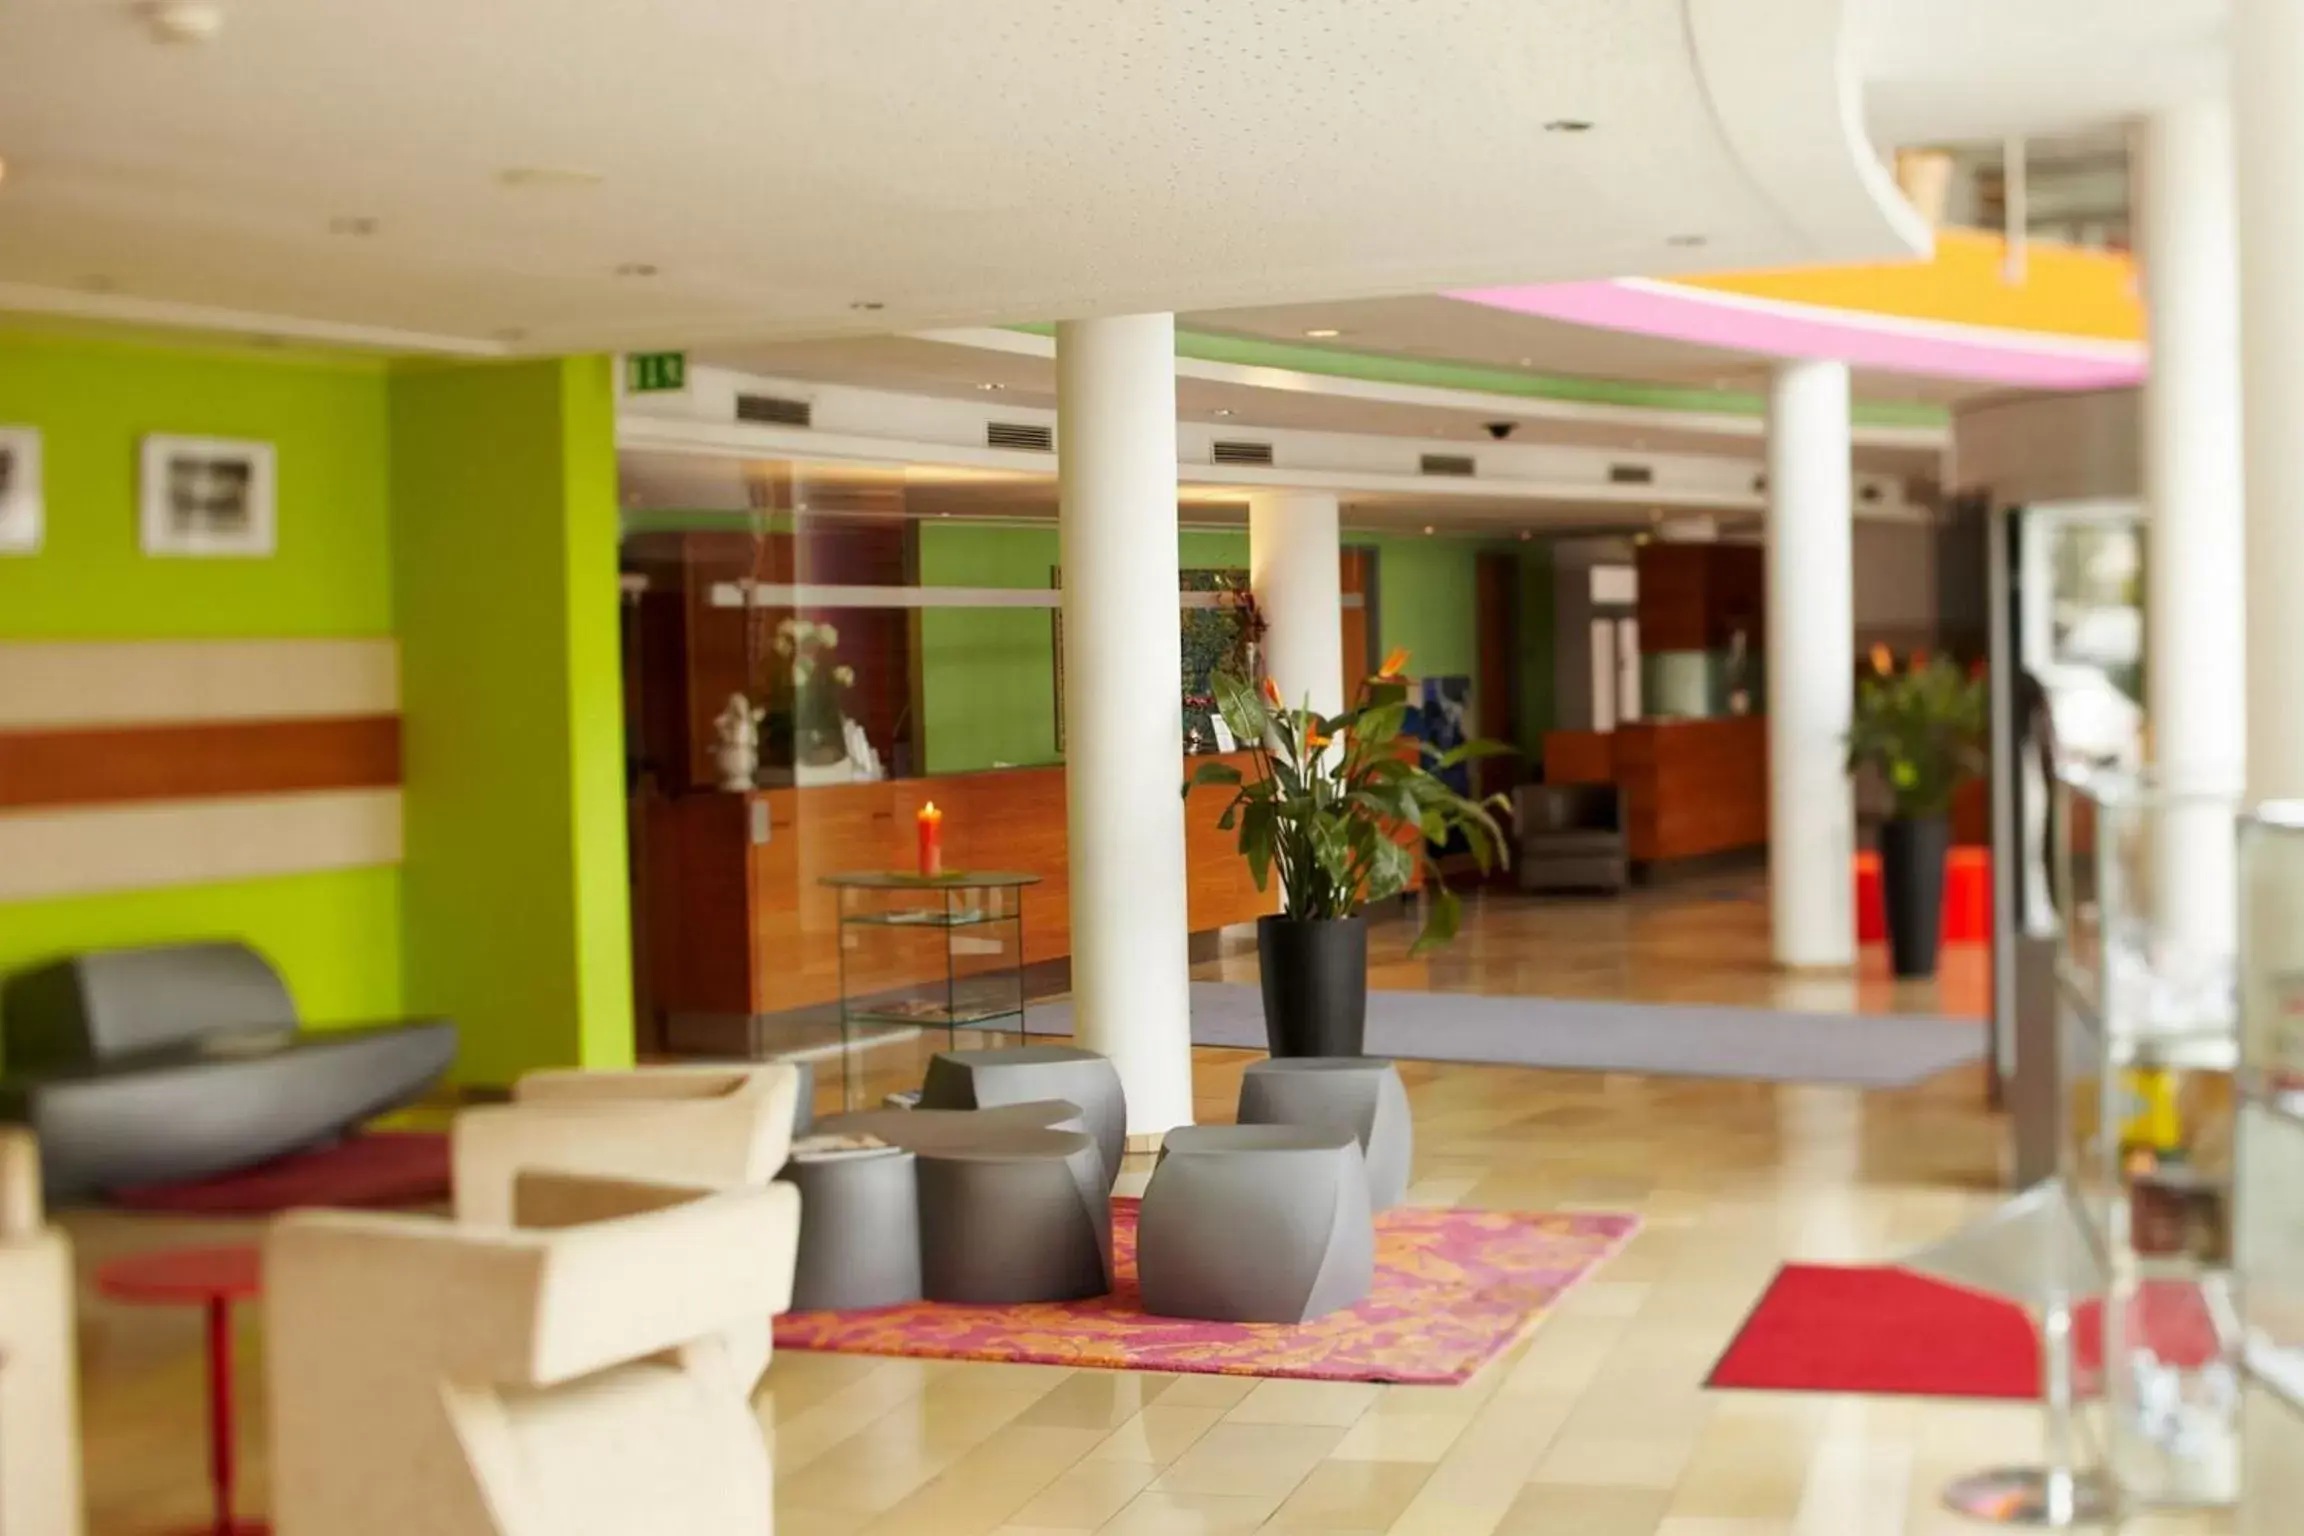 Lobby or reception, Lobby/Reception in Amadeo Hotel Schaffenrath